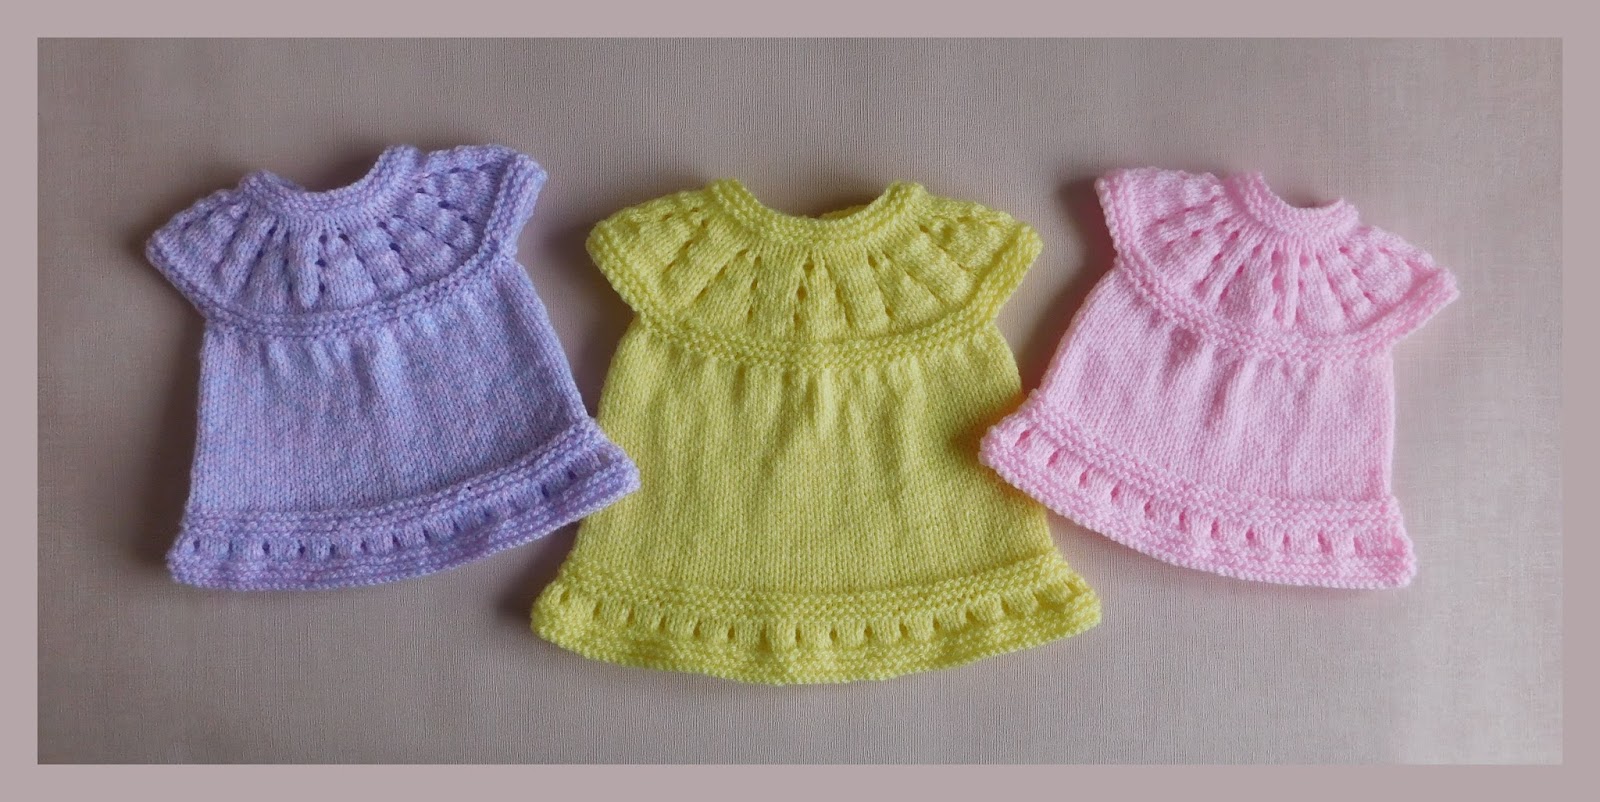 preemie baby dresses